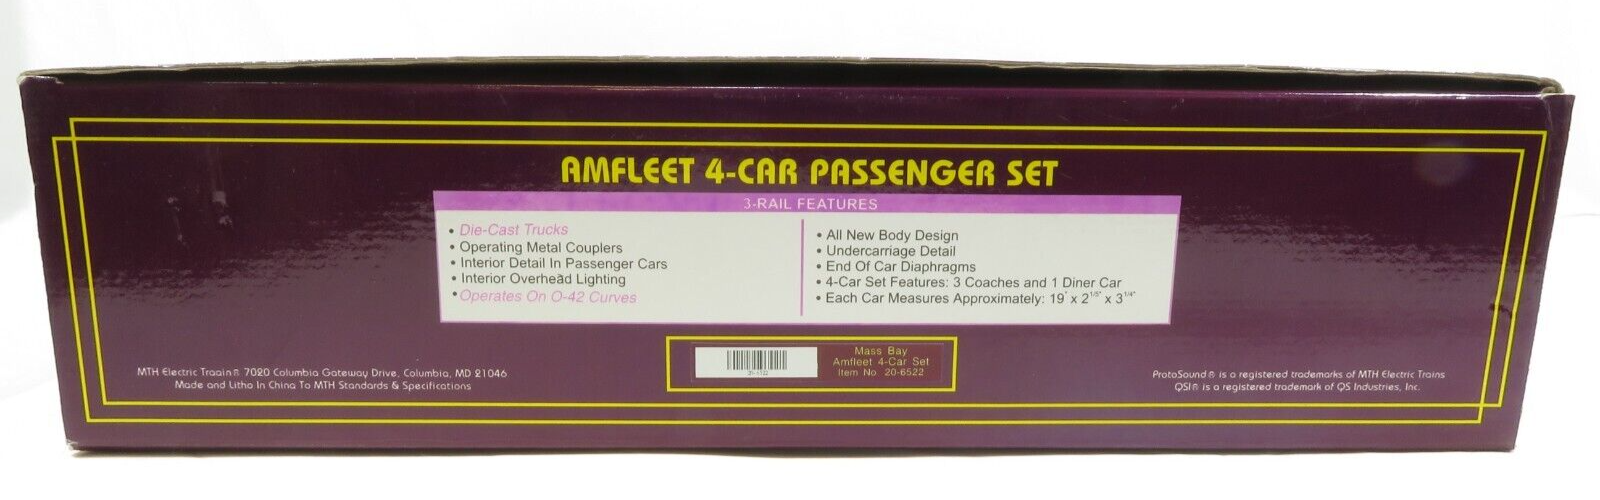 MTH 20-6522 Mass Bay 4-Car Amfleet Passenger Car Set NIB